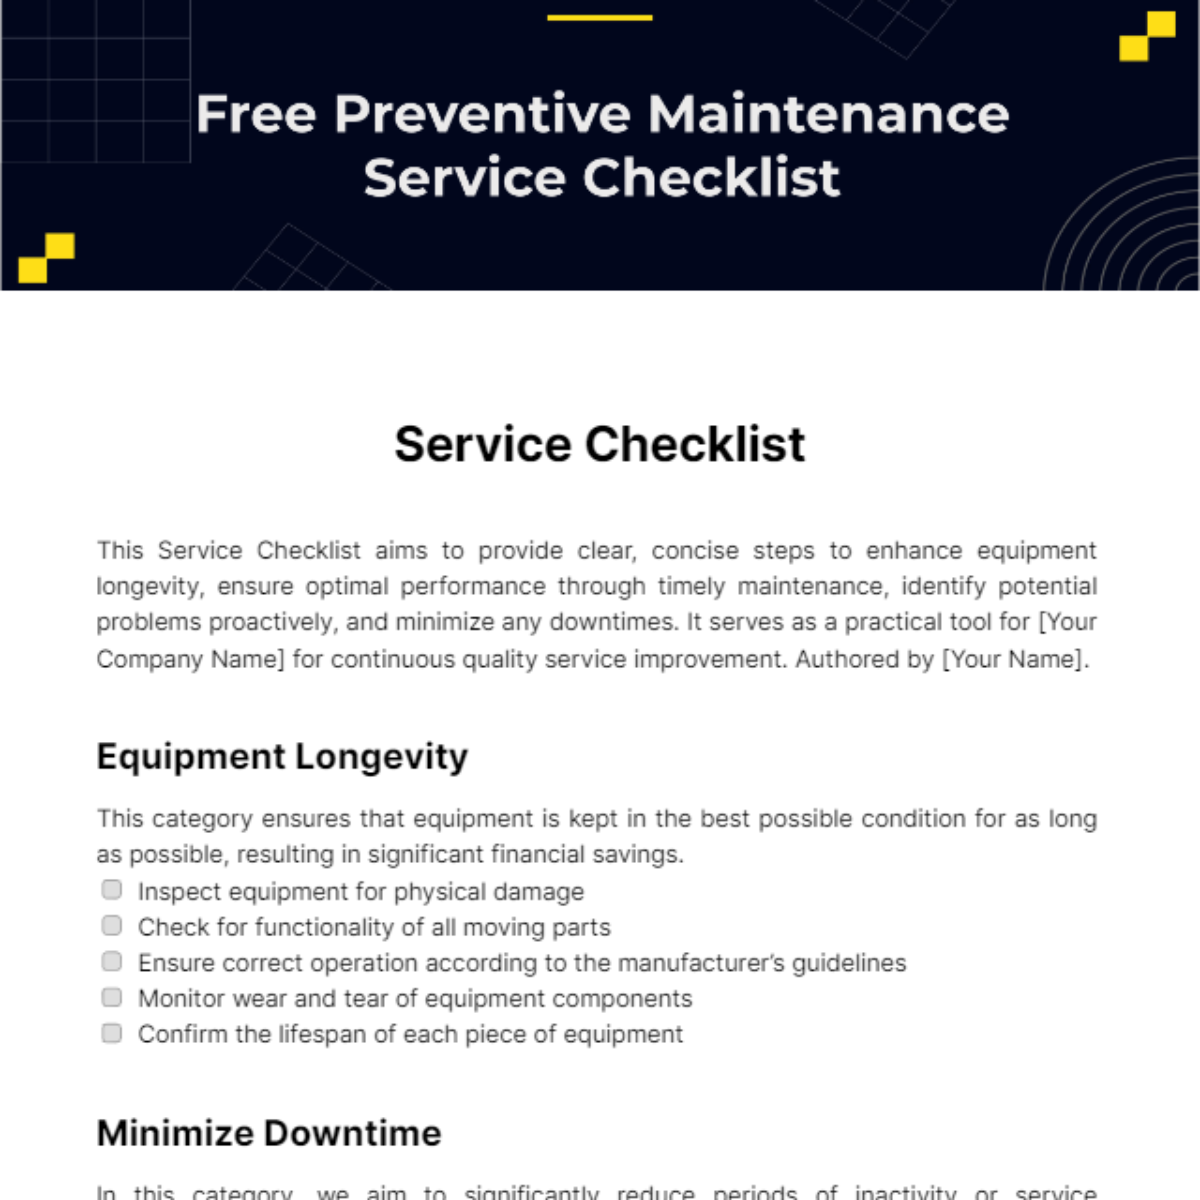 Free Preventive Maintenance Service Checklist Template